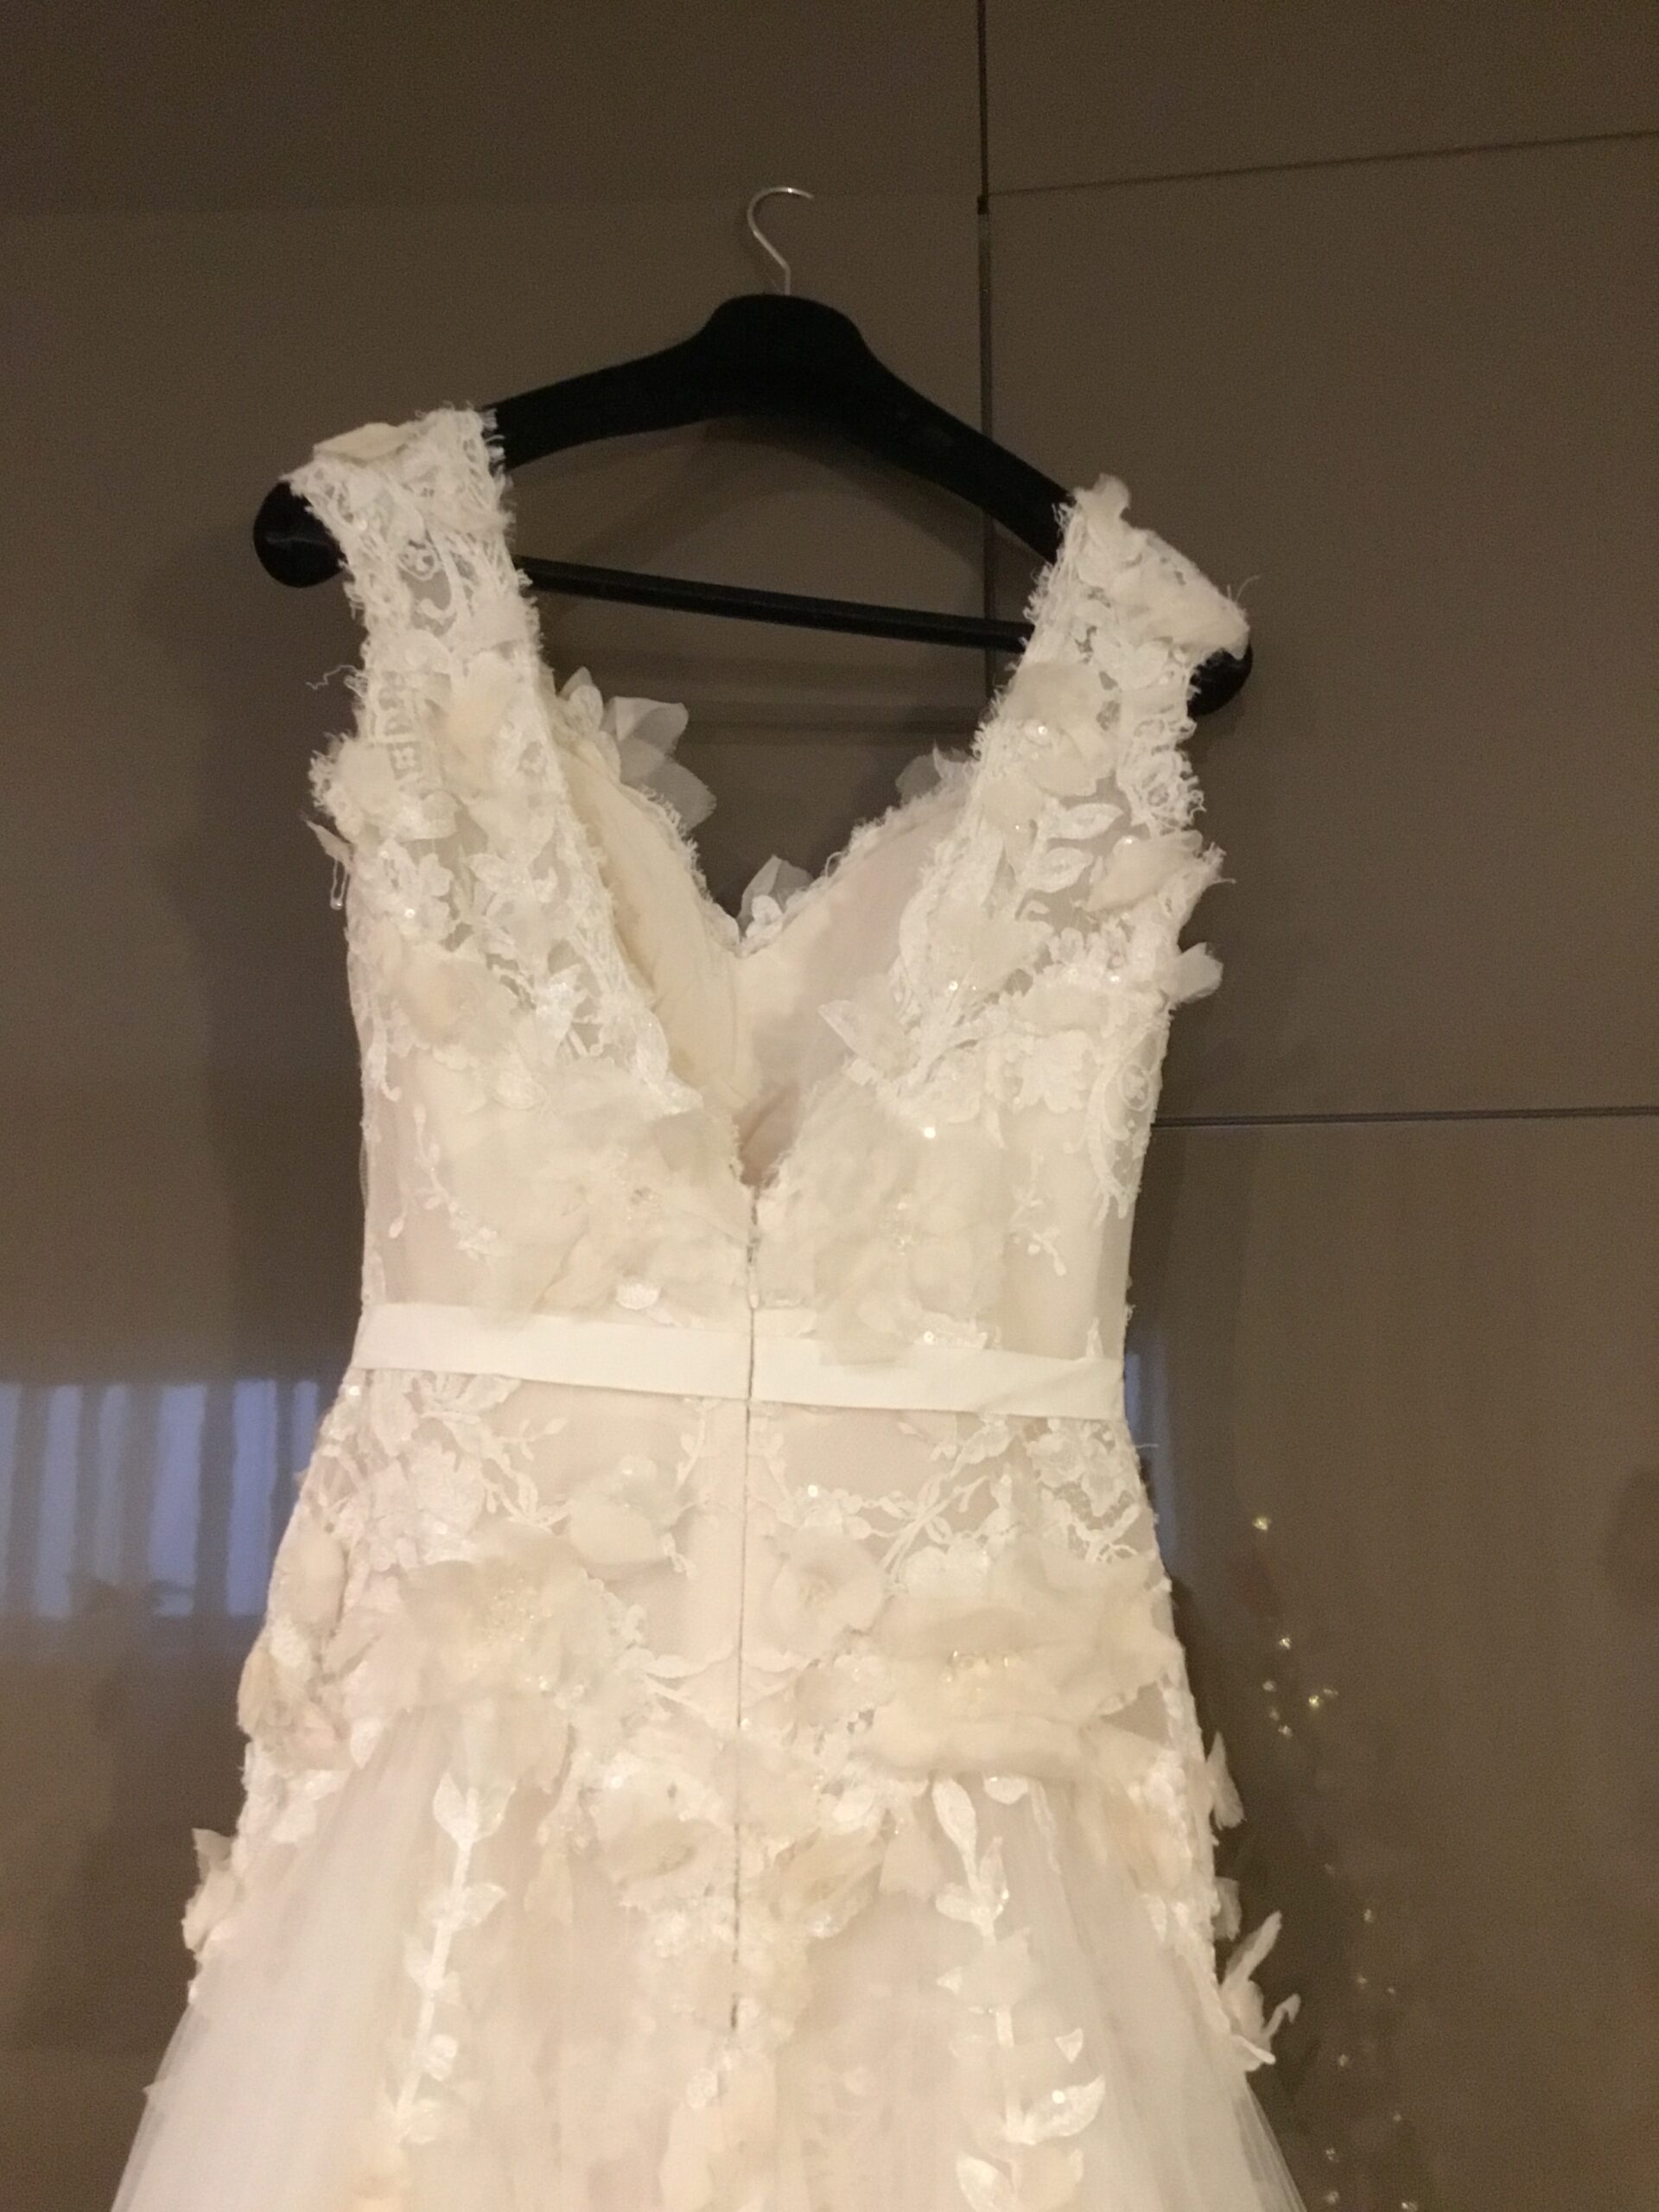 Vestido de noiva Elie Saab Aglaya Wedding Dress. Vestido de Noiva coleção Pronovias- modelo Aglaya Elie Saab 2011 8